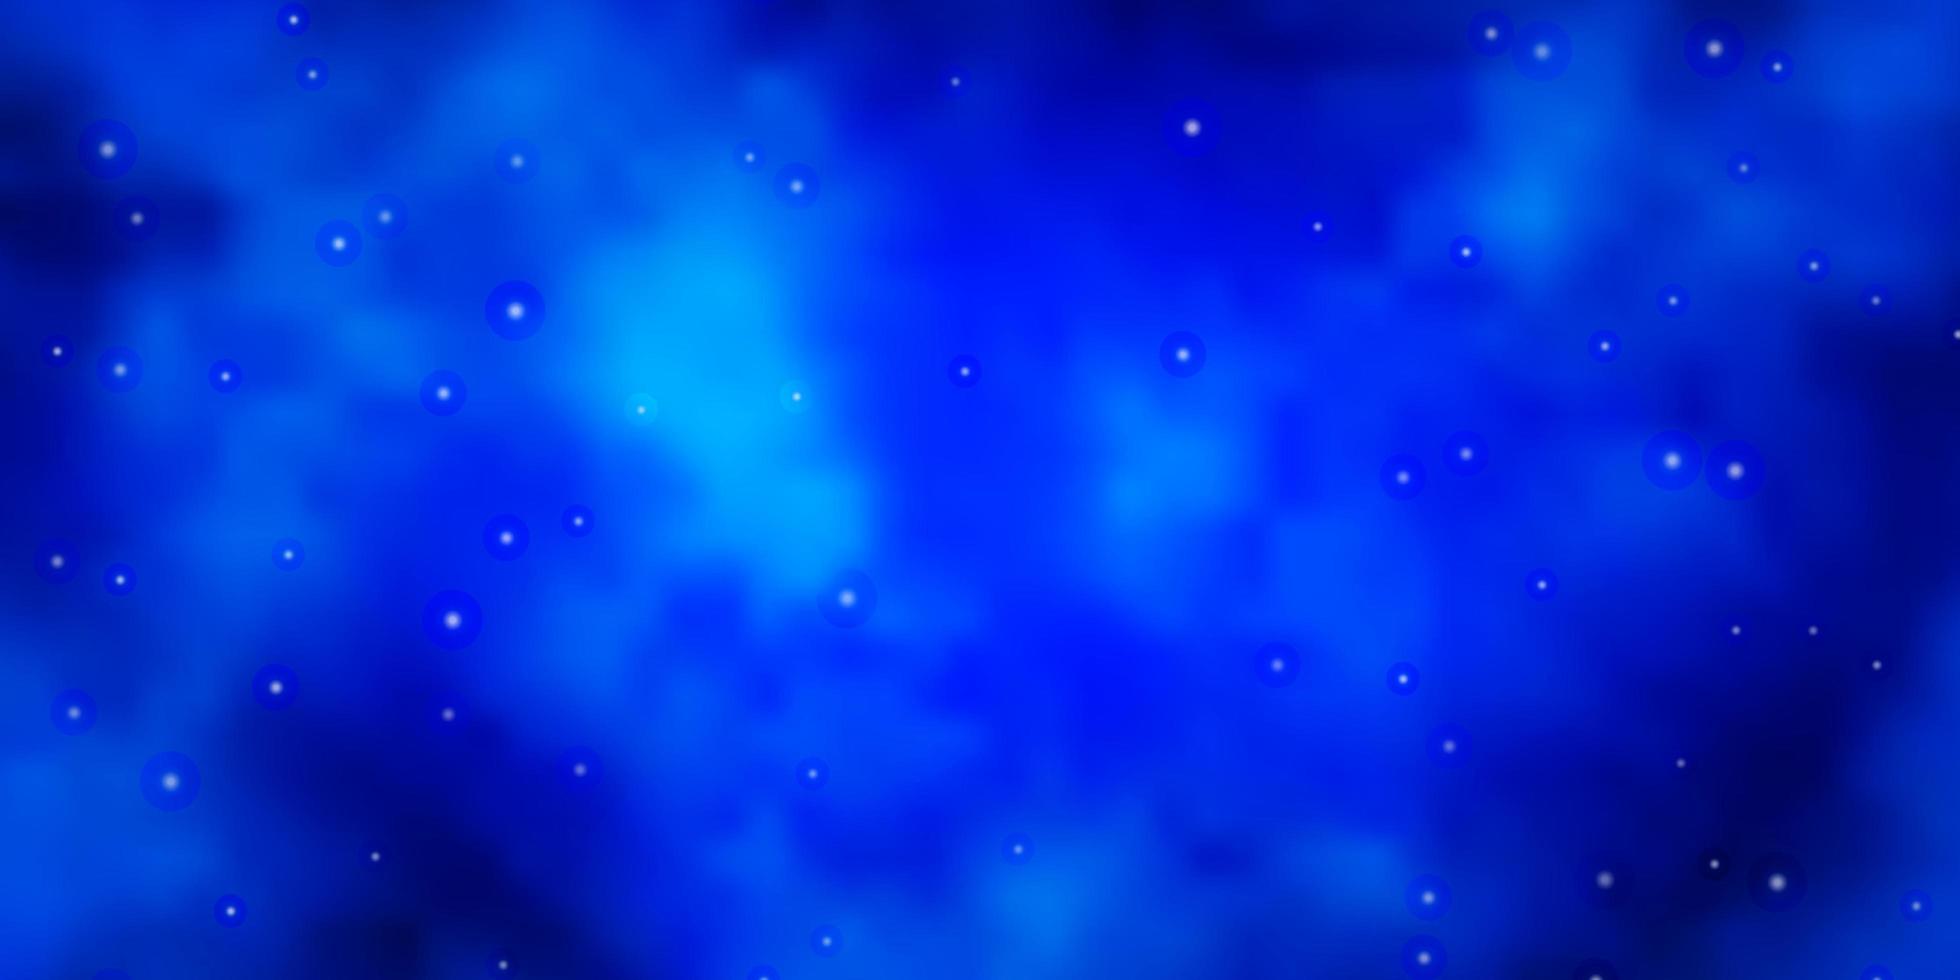 dunkelblaues Vektorlayout mit hellen Sternen. bunte Illustration im abstrakten Stil mit Farbverlaufssternen. Muster für Websites, Zielseiten. vektor